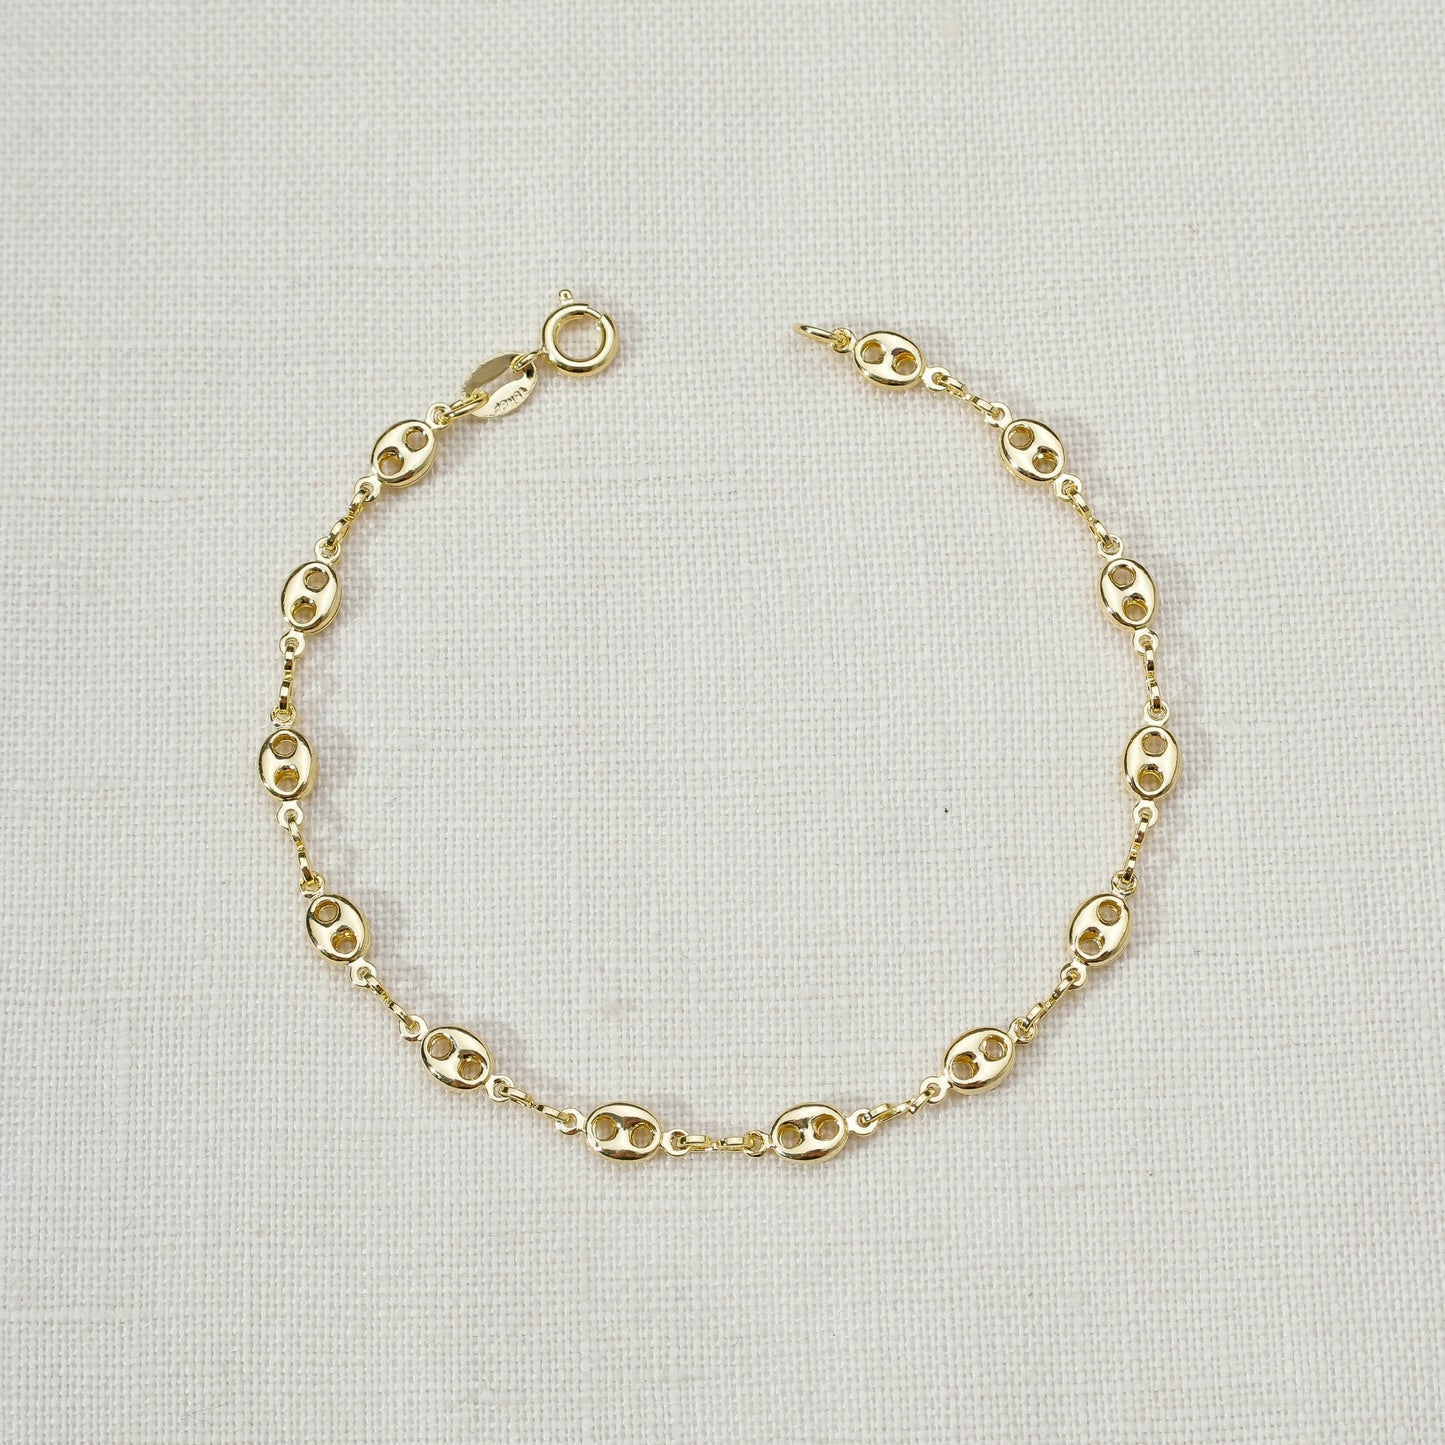 18k Gold Filled Fancy Puff Links Chain Bracelet